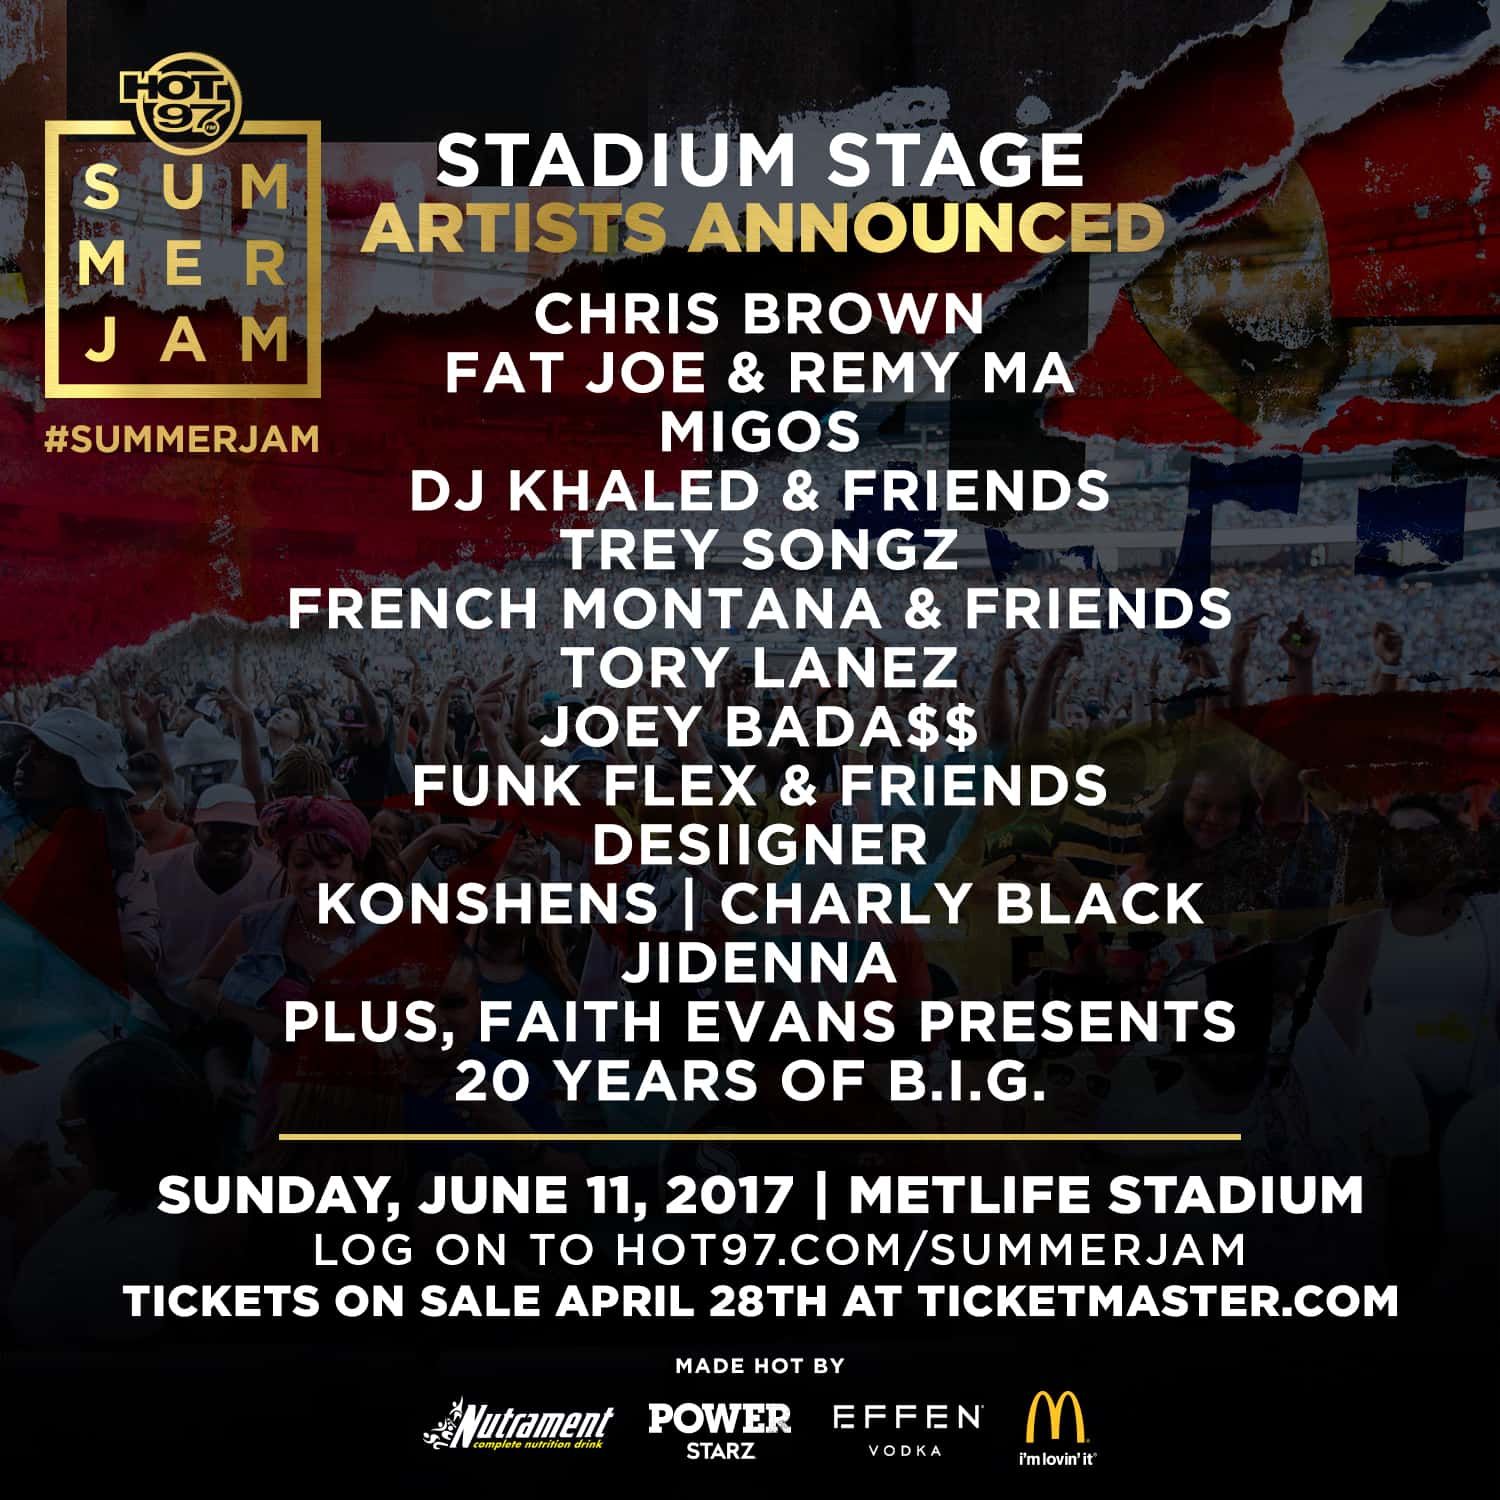 EVENT | HOT 97 Summer Jam 2017 Stadium Stage Announcement